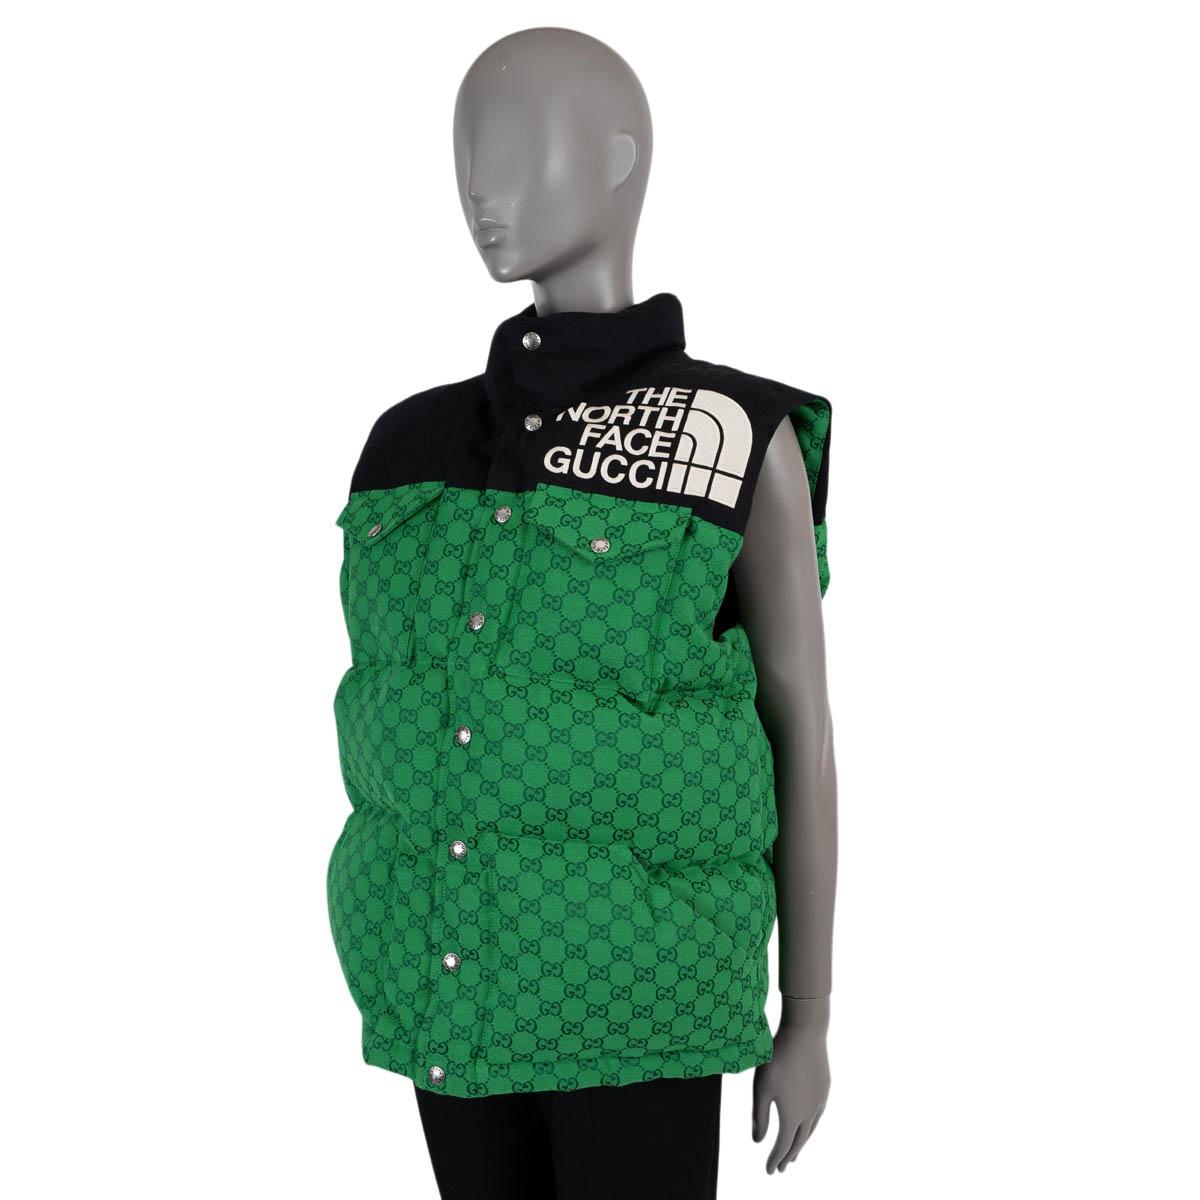 100% authentische Gucci x The North Face Daunenweste in grünem GG Monogram und schwarzer Baumwolle (71%) und Polyester (29%). Mit hohem Halsausschnitt und zwei Pattentaschen auf der Brust. Schließt mit Druckknöpfen auf der Vorderseite und ist mit